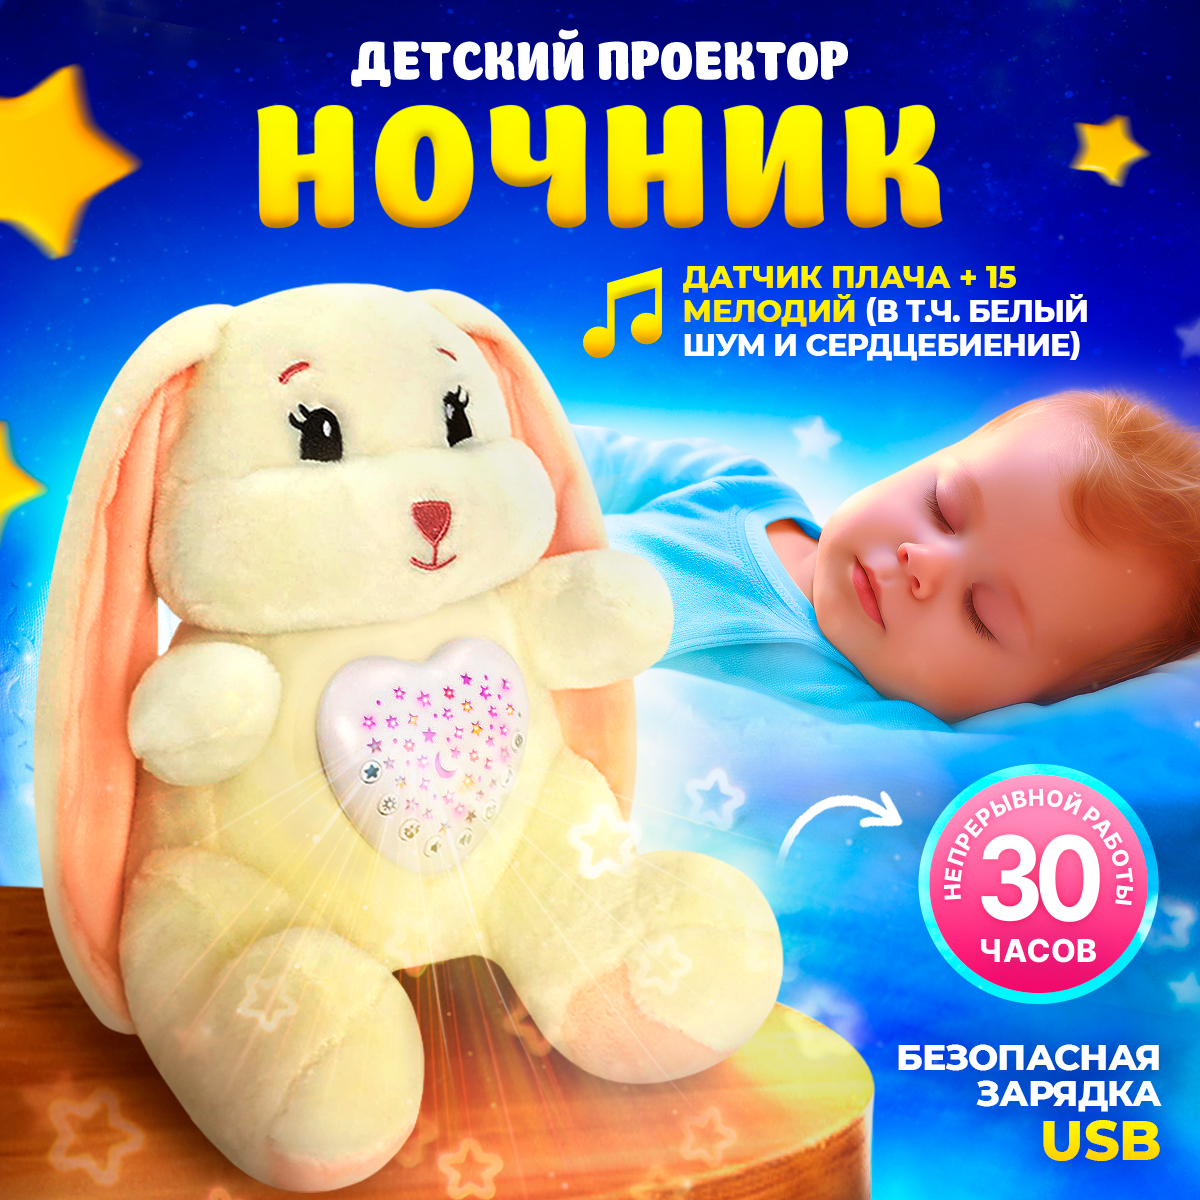 Ночник детский babypolis мягкая игрушка с проектором белым шумом и датчиком плача